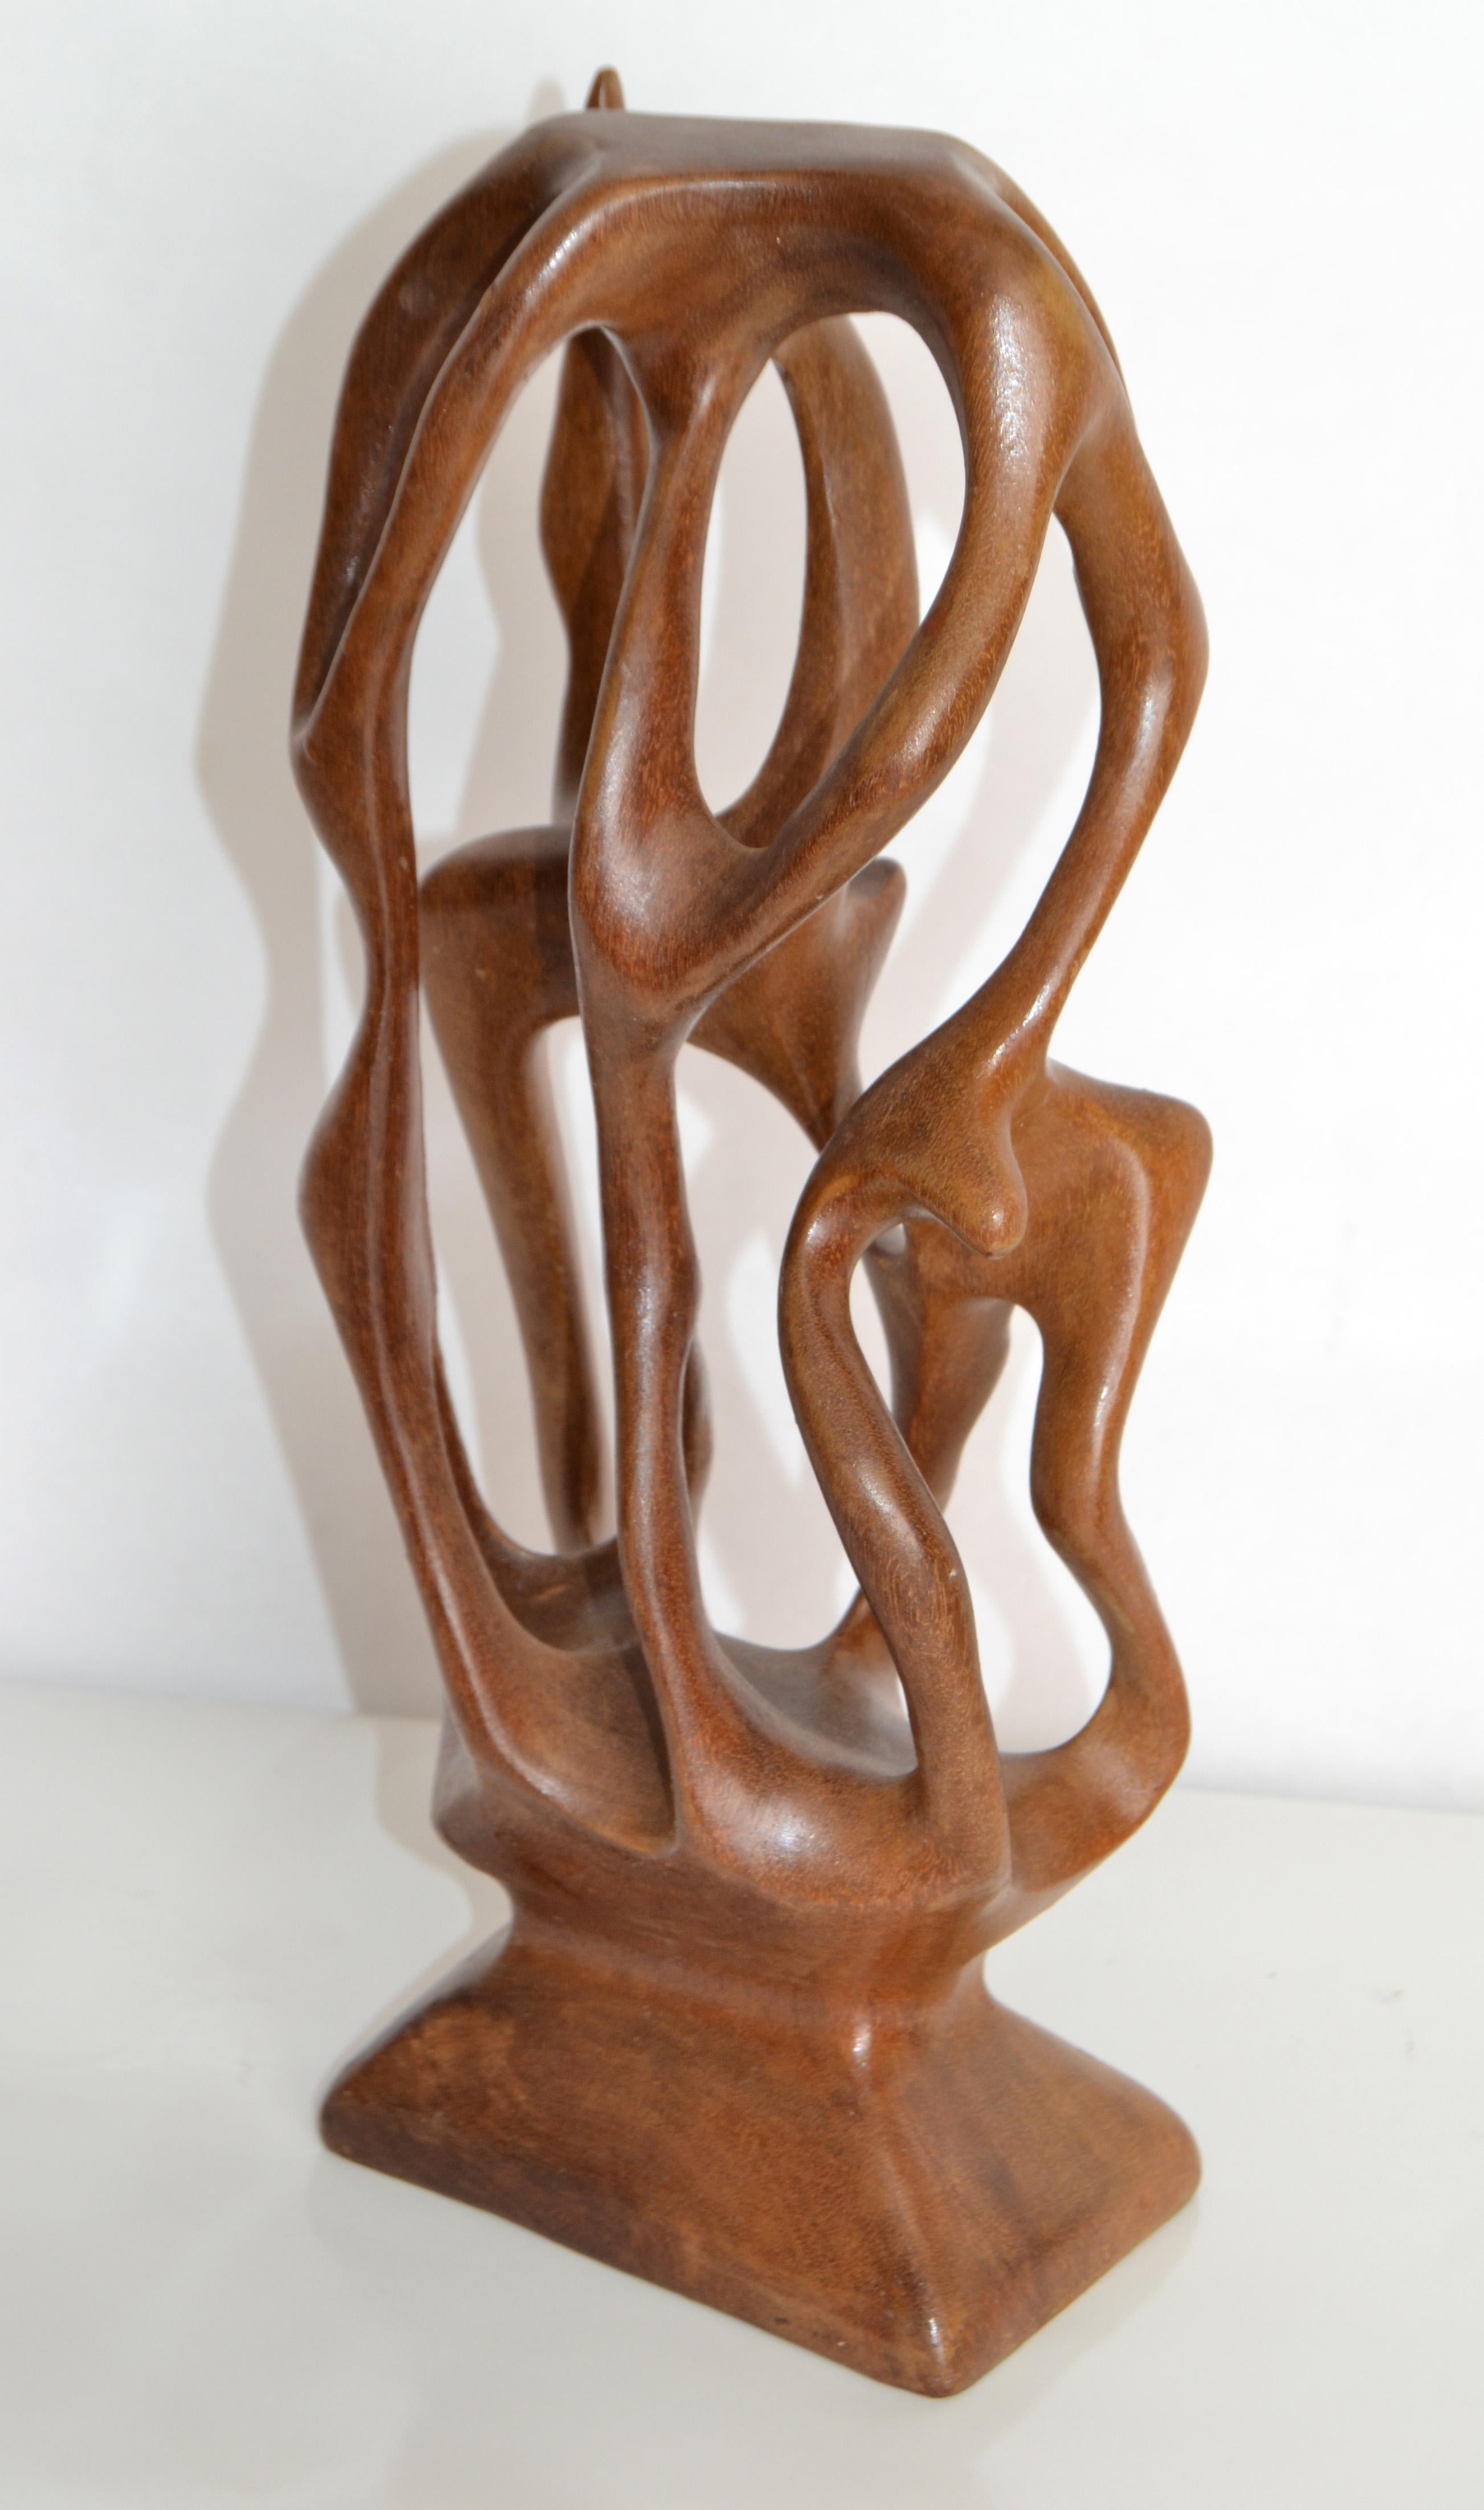 Cette charmante sculpture organique en bois, de forme libre, est taillée dans une seule pièce d'if et ses courbes sinueuses se heurtent à tous les angles. 
Les ifs font partie des arbres les plus anciens du monde. Il est cultivé dans de nombreuses